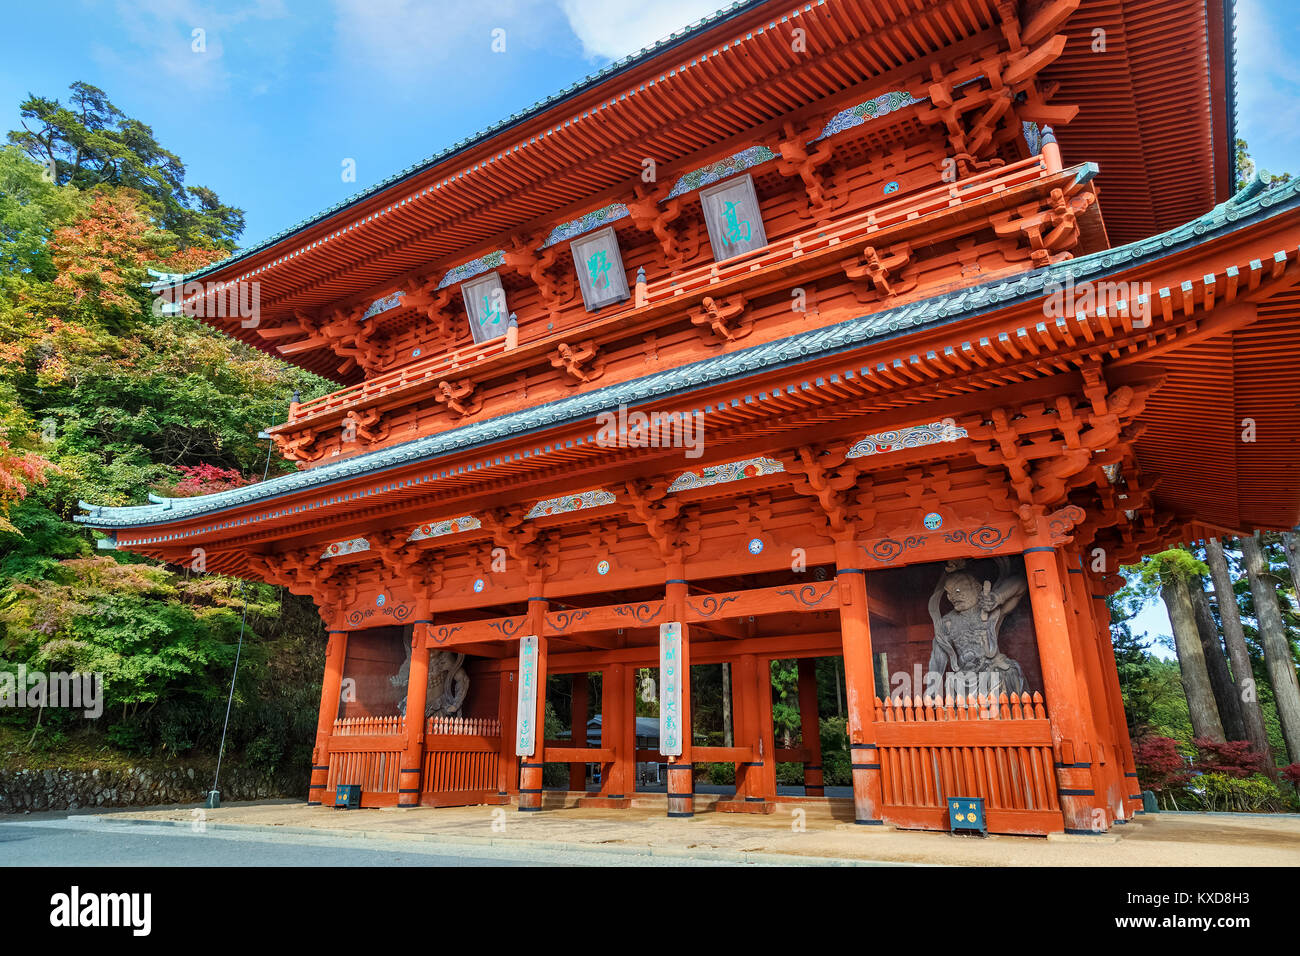 Daimon Gate, the Ancient Main Entrance to Koyasan (Mt. Koya) in